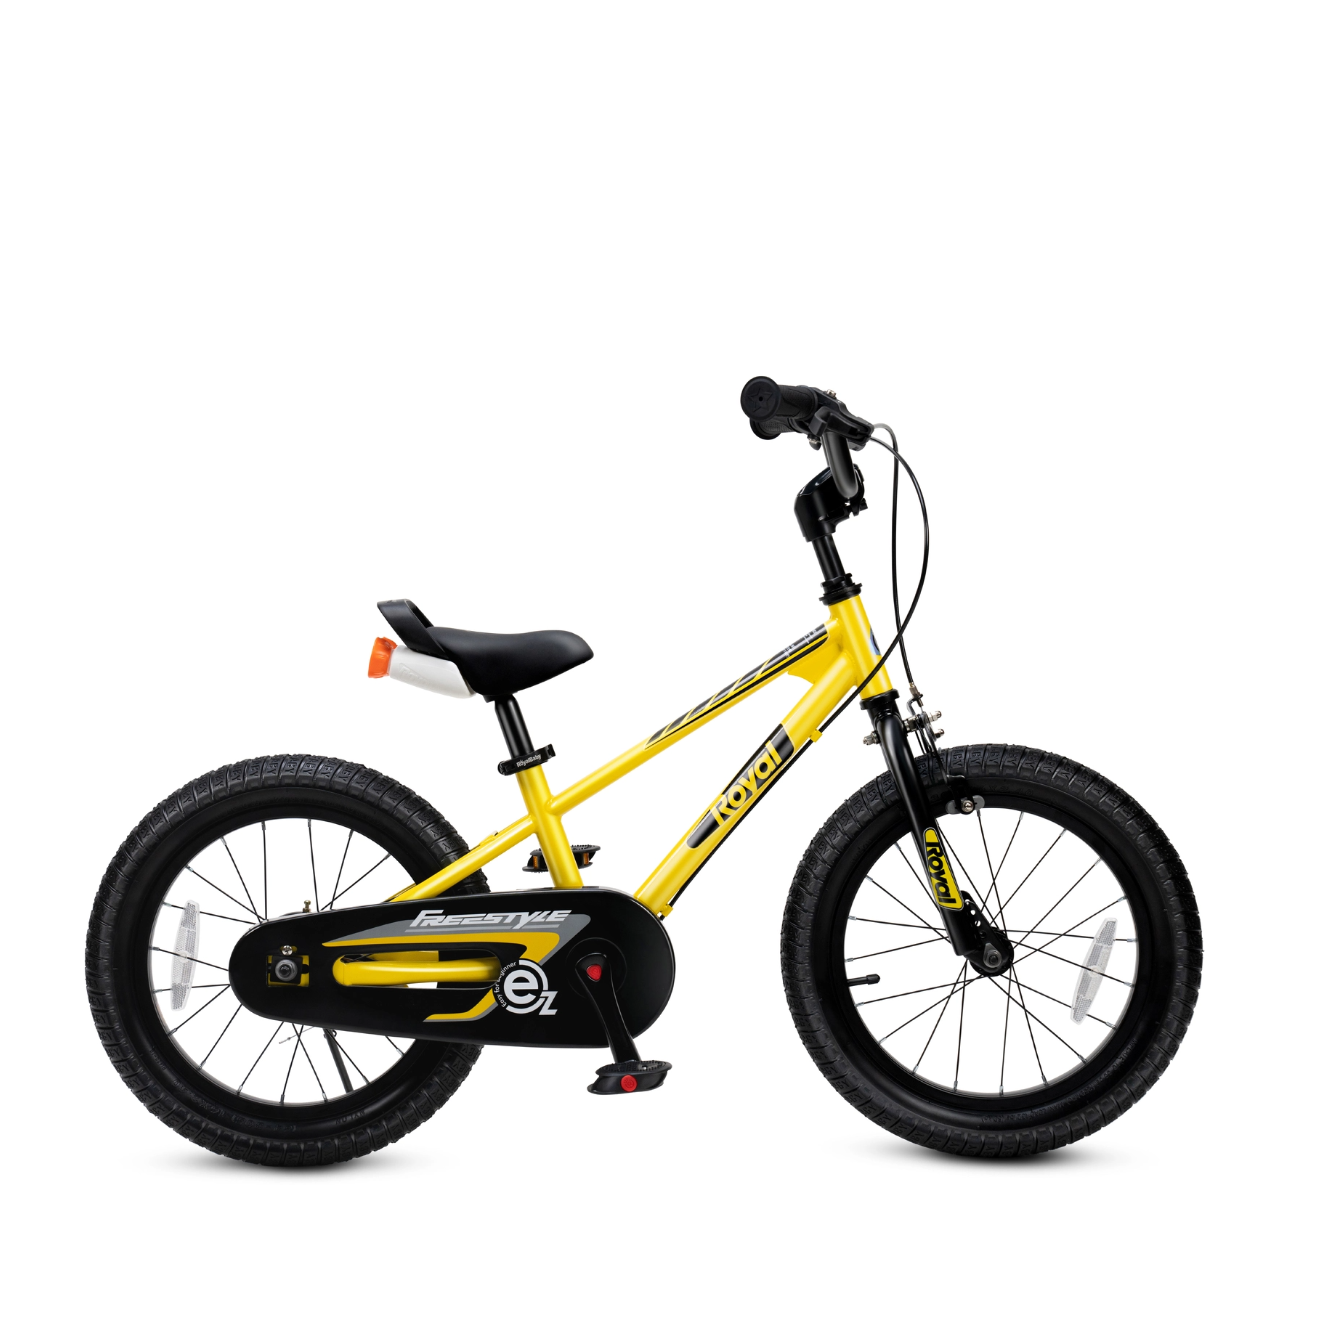 RoyalBaby 优贝 易骑儿童自行车 EZ表演车 16寸 柠檬黄